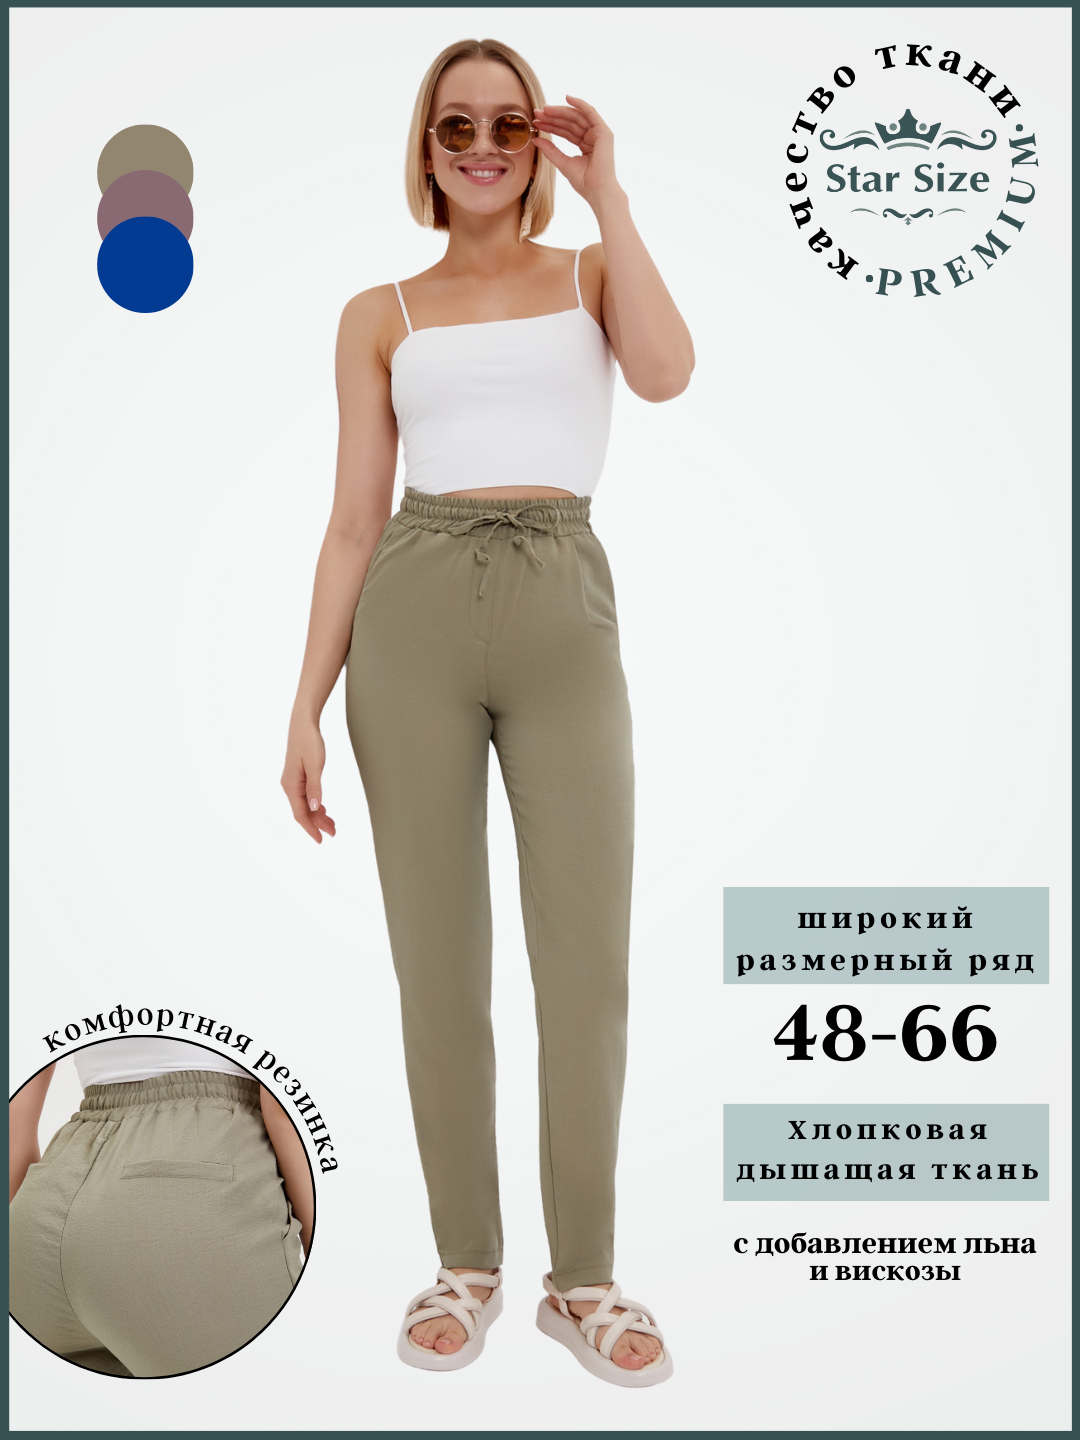 Брюки спортивные Star Size брюки летние женские больших размеров, размер 60, серый, зеленый